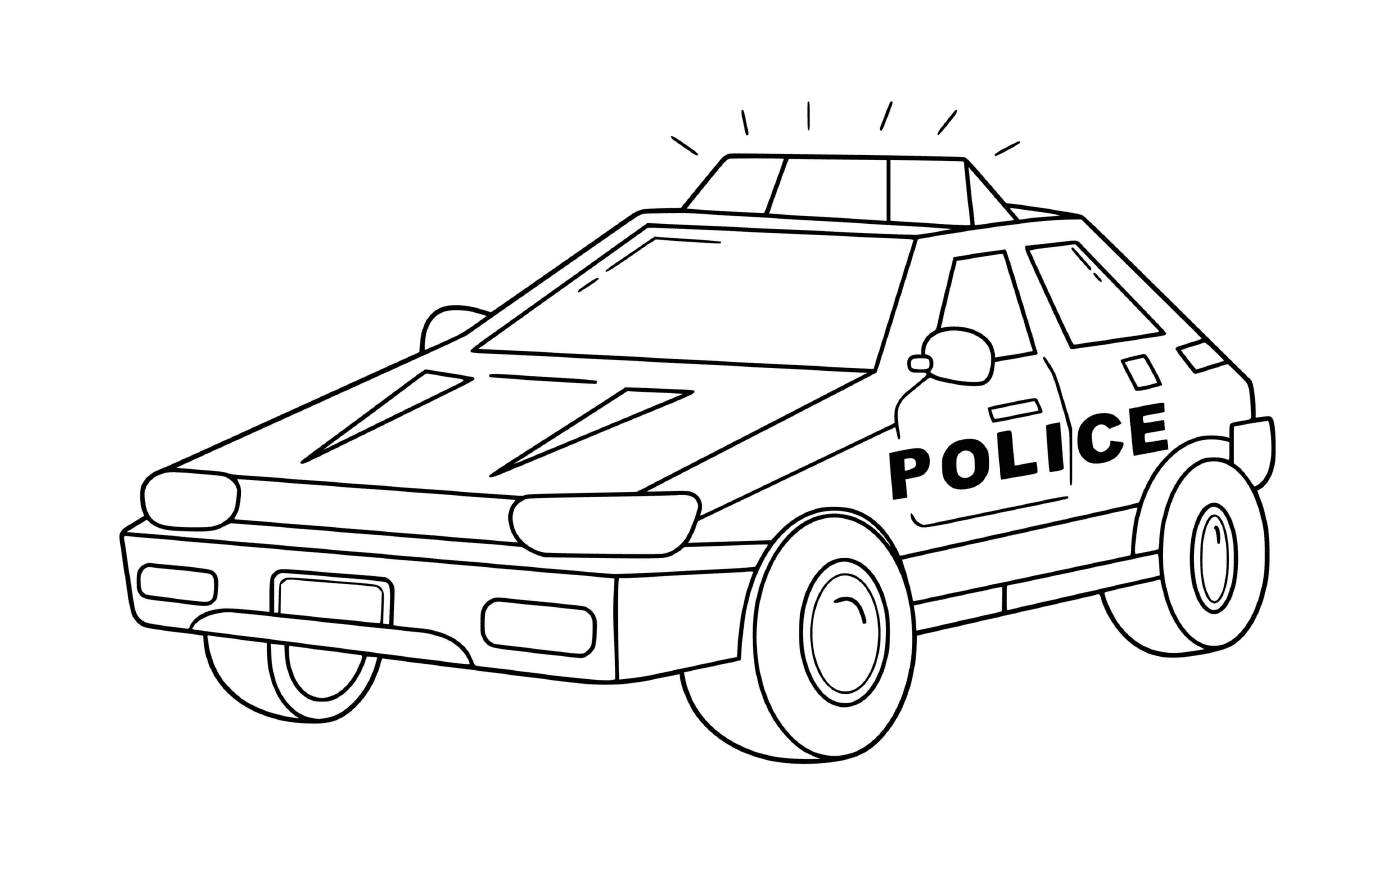  سيارة شرطة مزوَّرة من النقل 